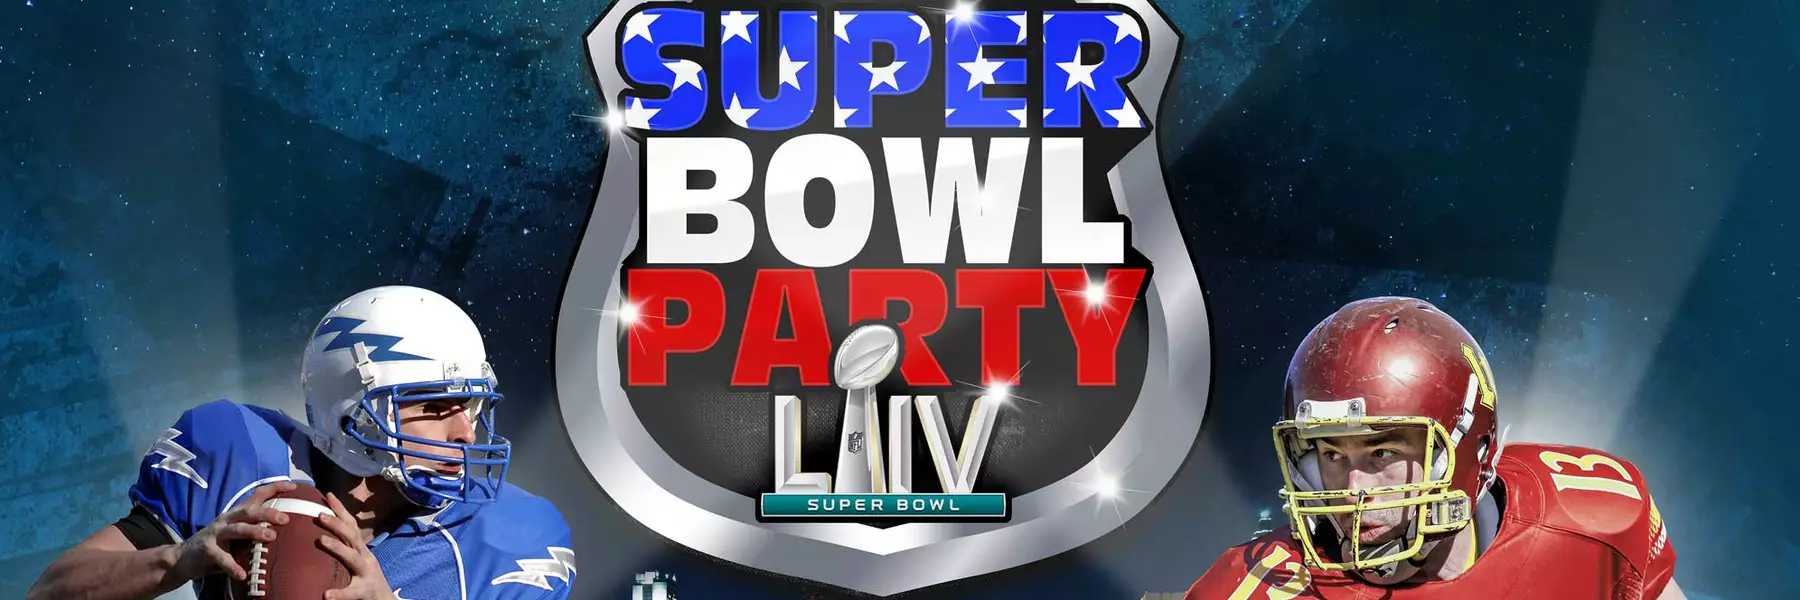 Super Bowl Party in der Samsung Hall Zürich 02.02.2020